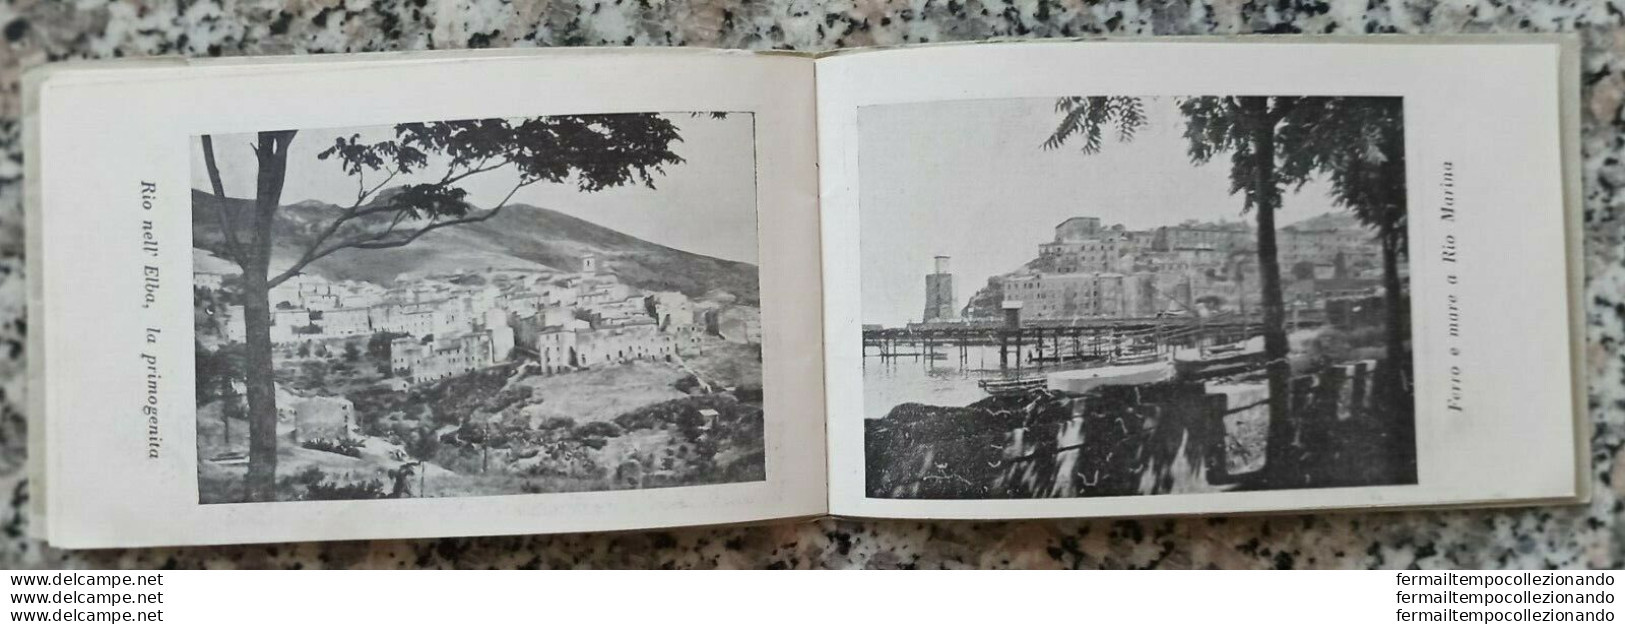 z173 isola d'elba libretto con 15 immagini  provincia di livorno